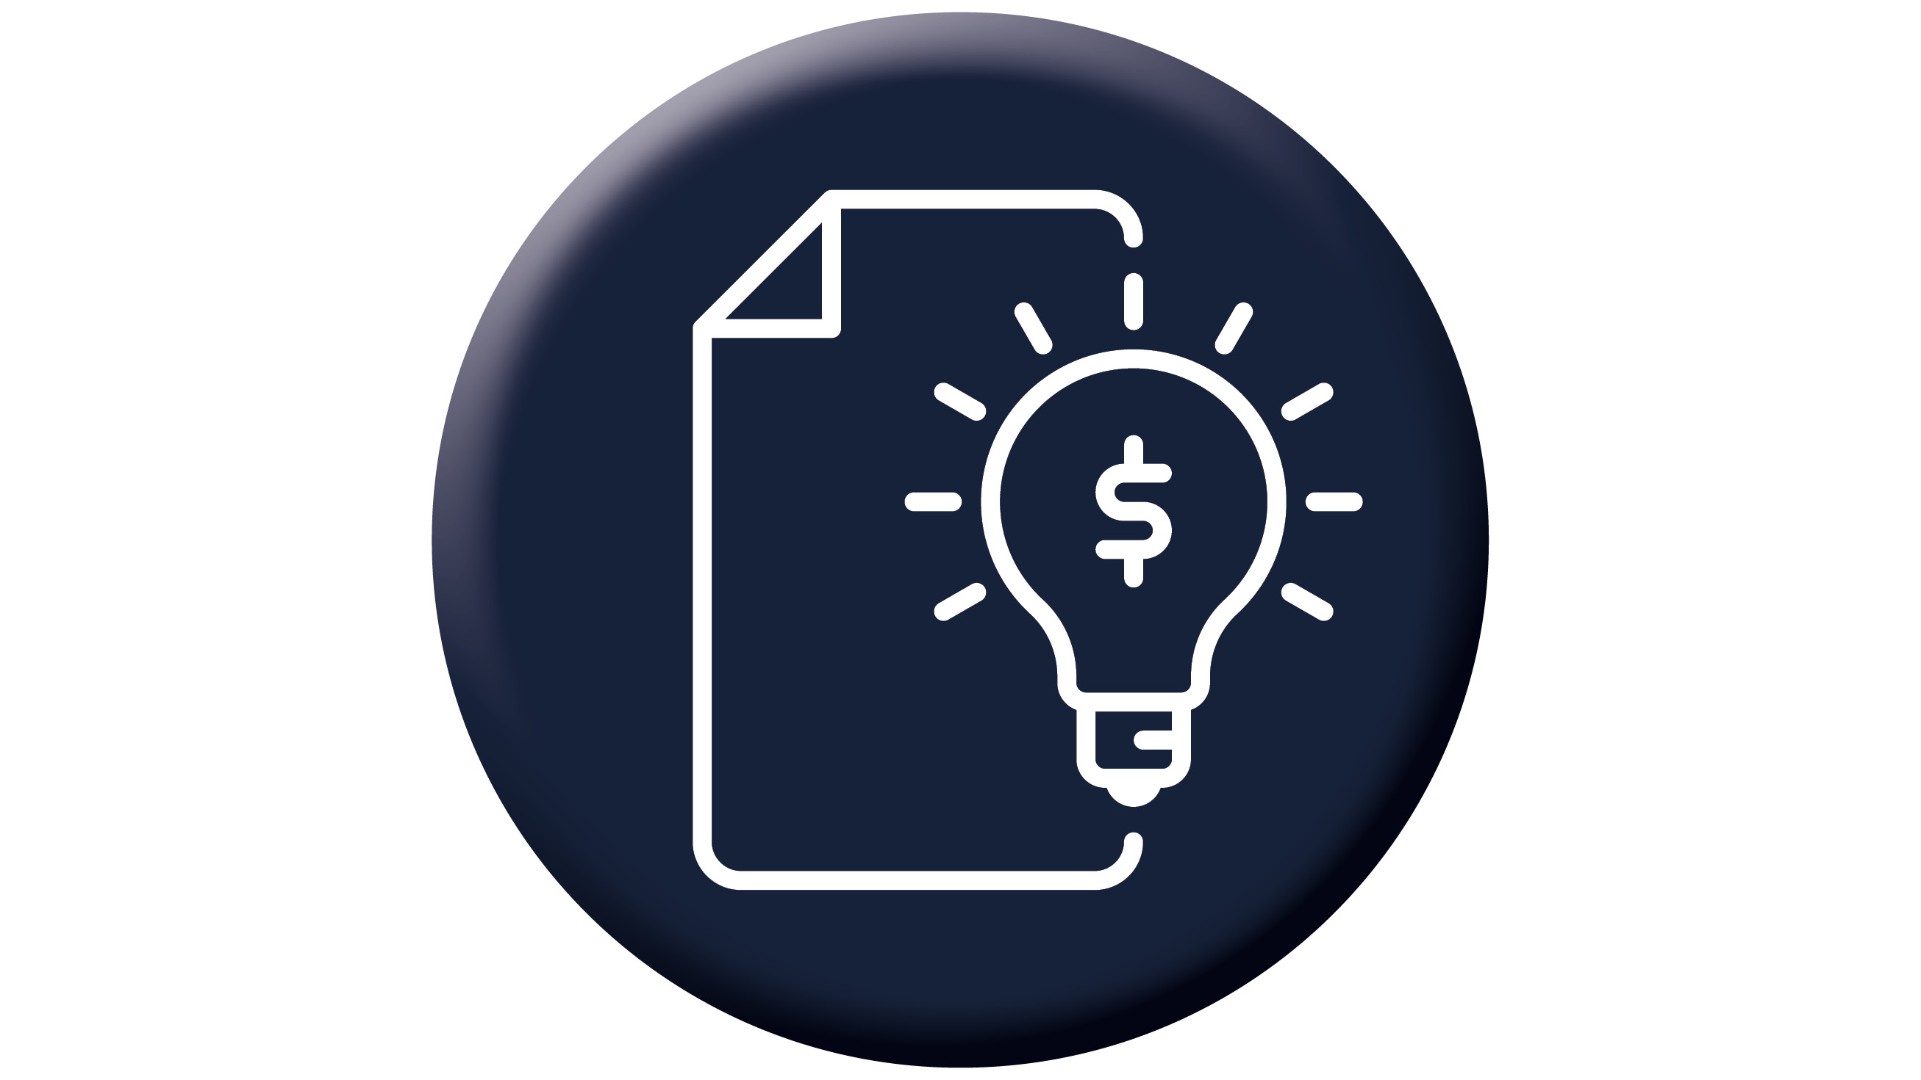 Darstellung intelligenter Rechnungsverarbeitung durch ein Icon mit Rechnungen und Glühlampe